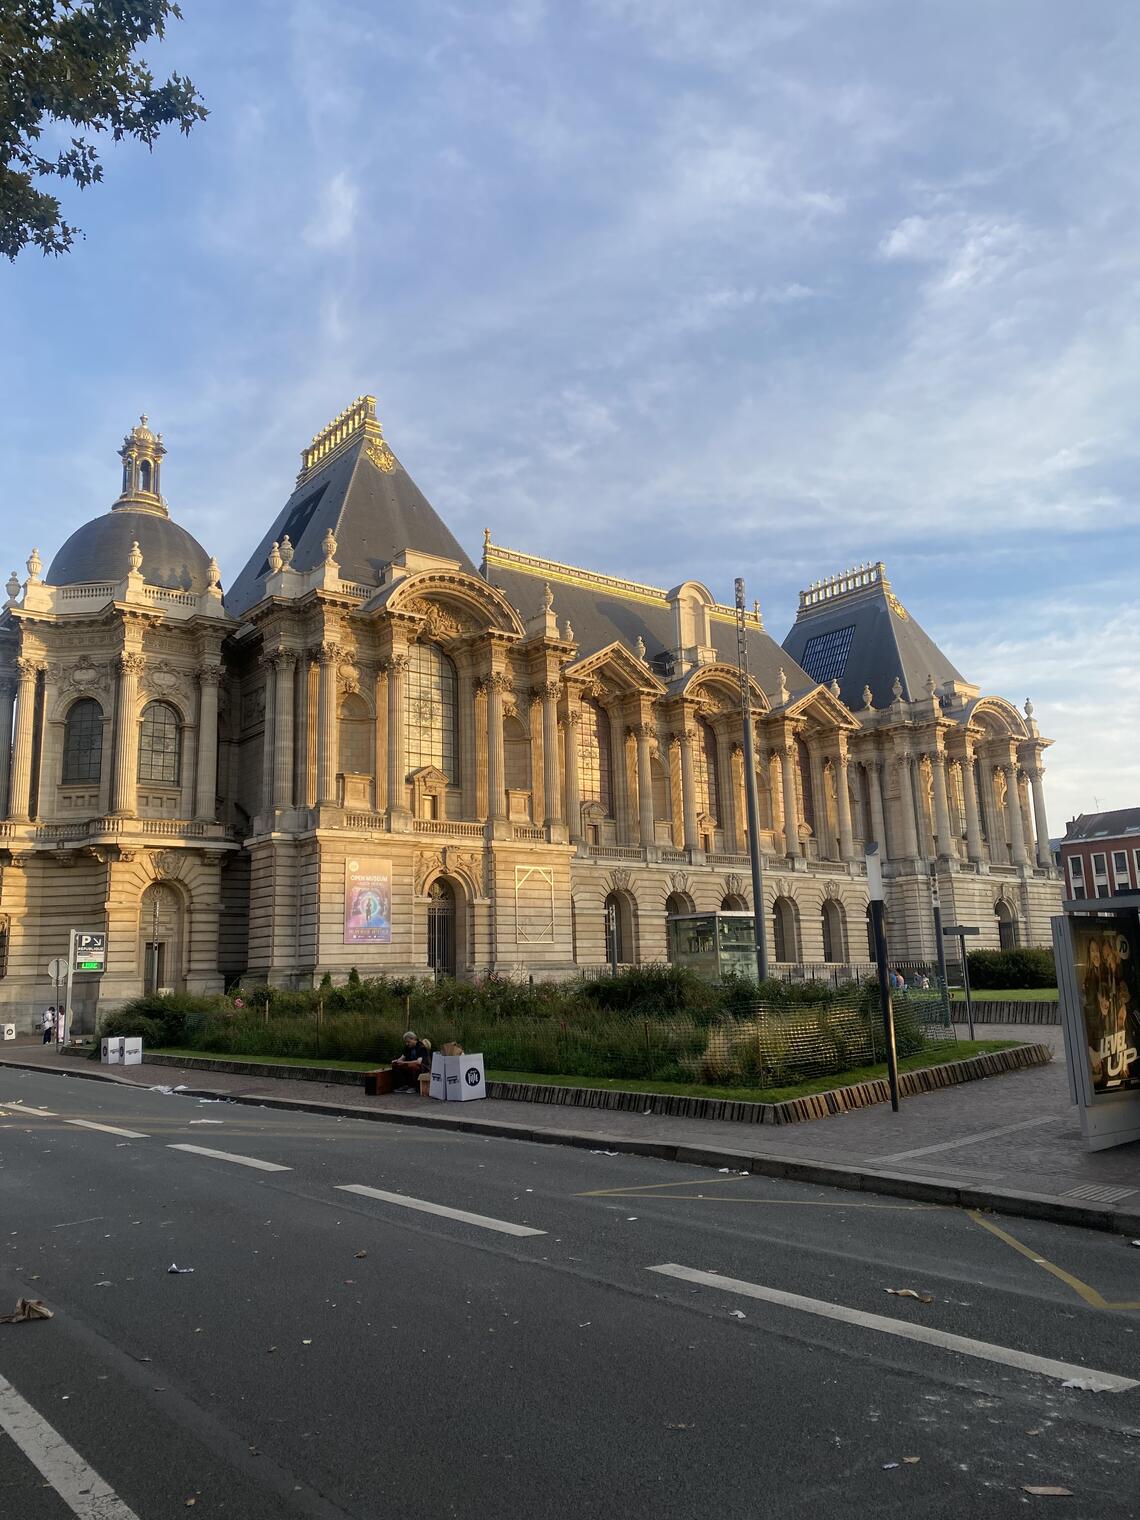 Palais des Beaux Arts Museum